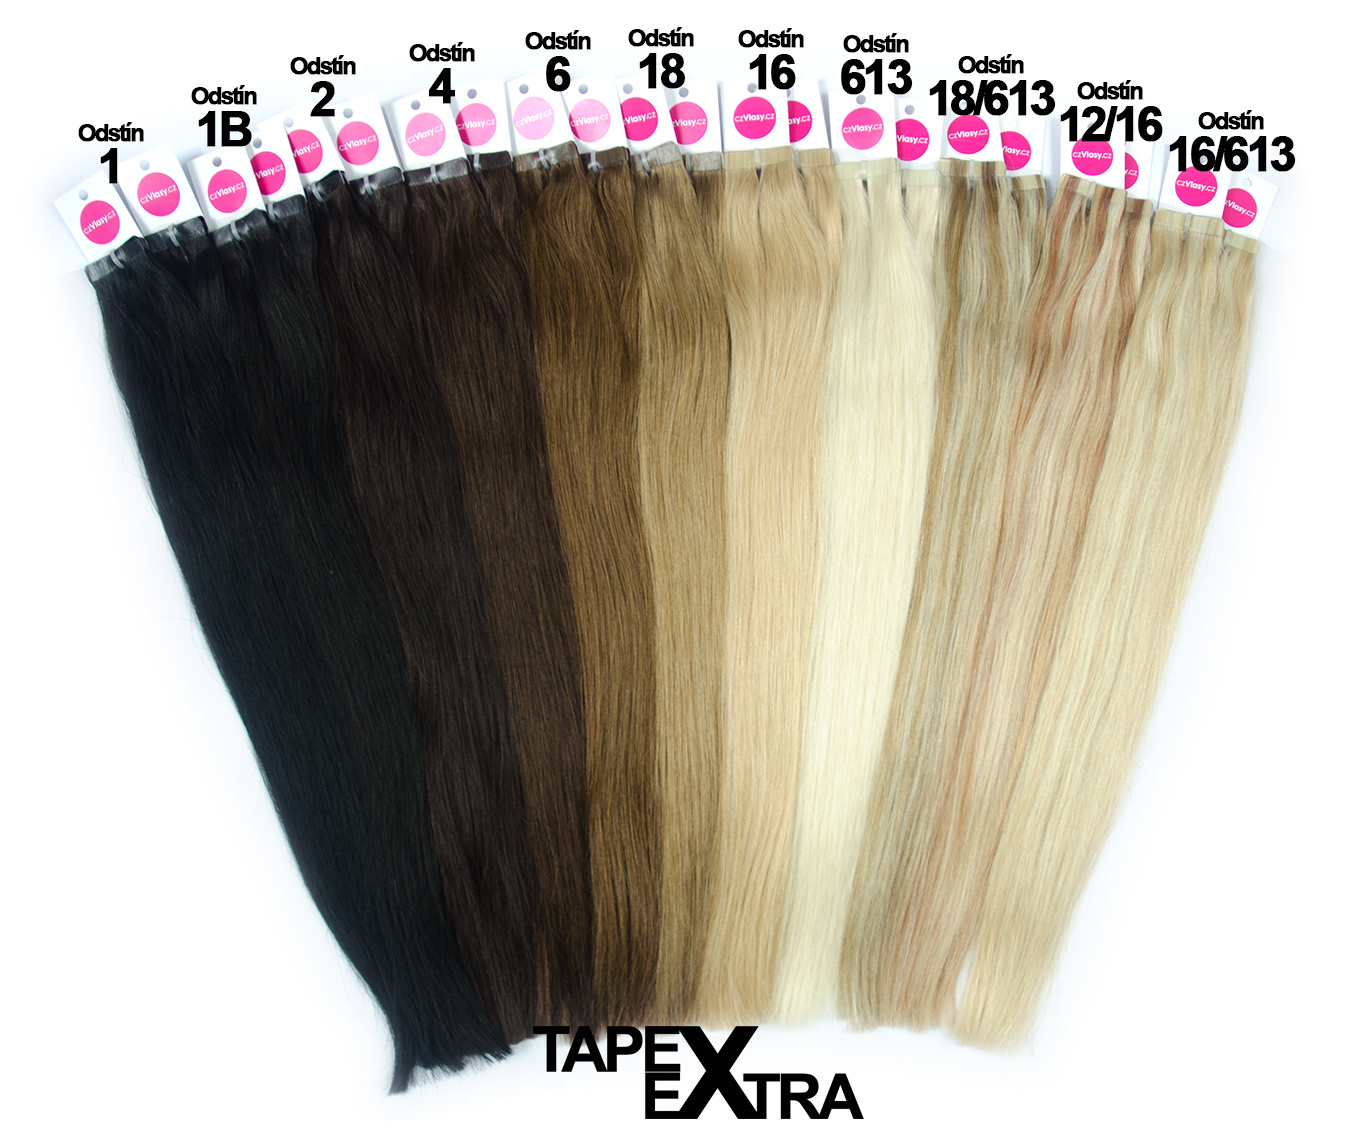 Asijské vlasy na metodu TAPEX EXTRA odstín 613 Délka: 40 cm, hmotnost: 25 gramů, 10 pásků